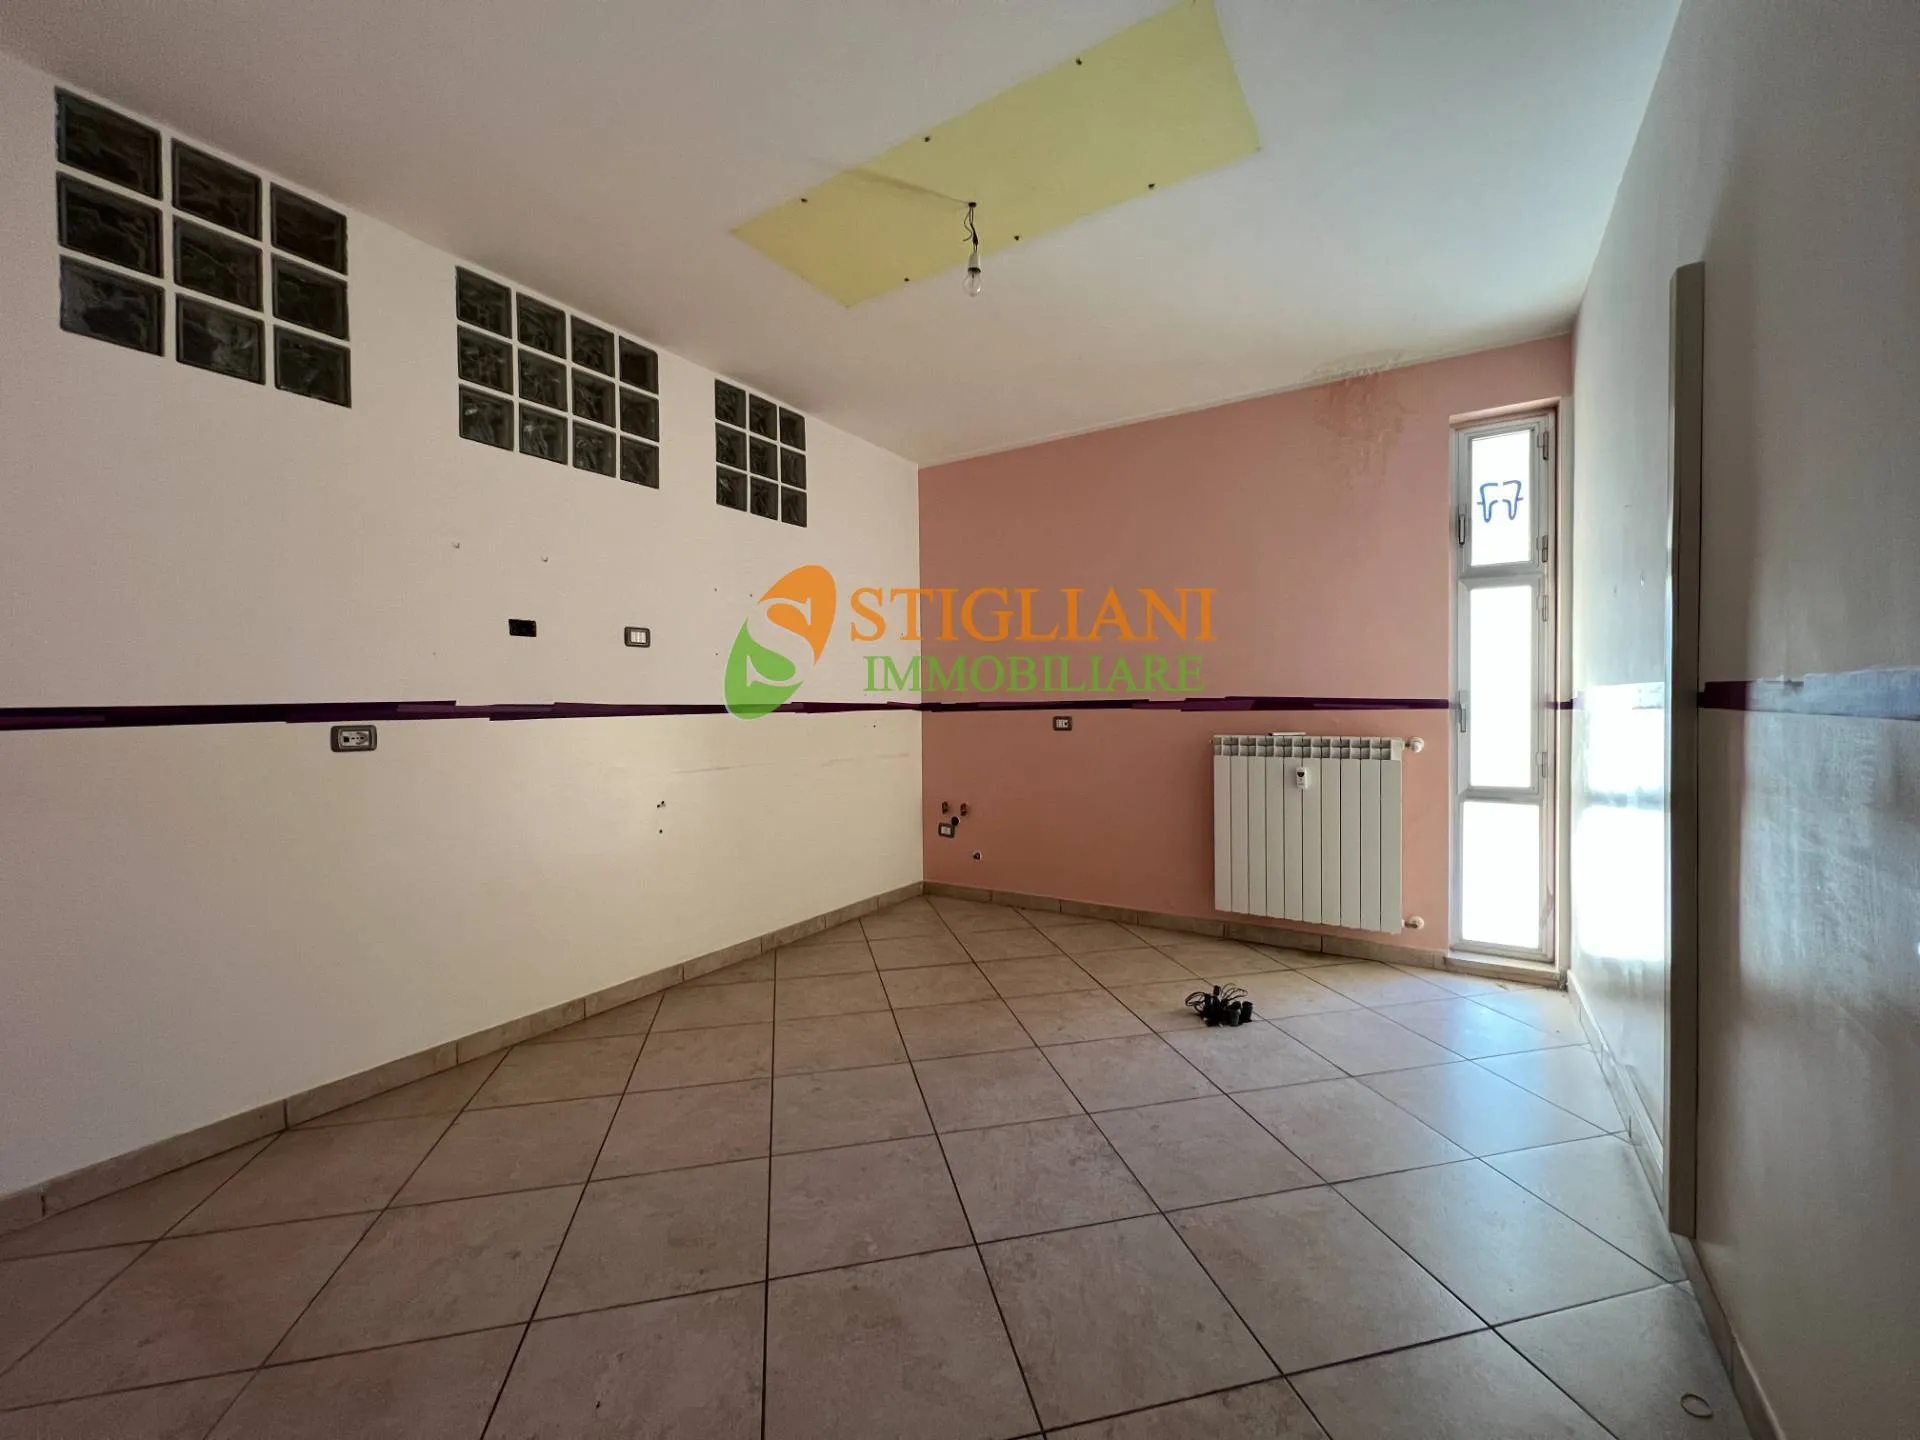 Immagine per Appartamento in vendita a Campobasso Traversa via Duca Degli Abruzzi